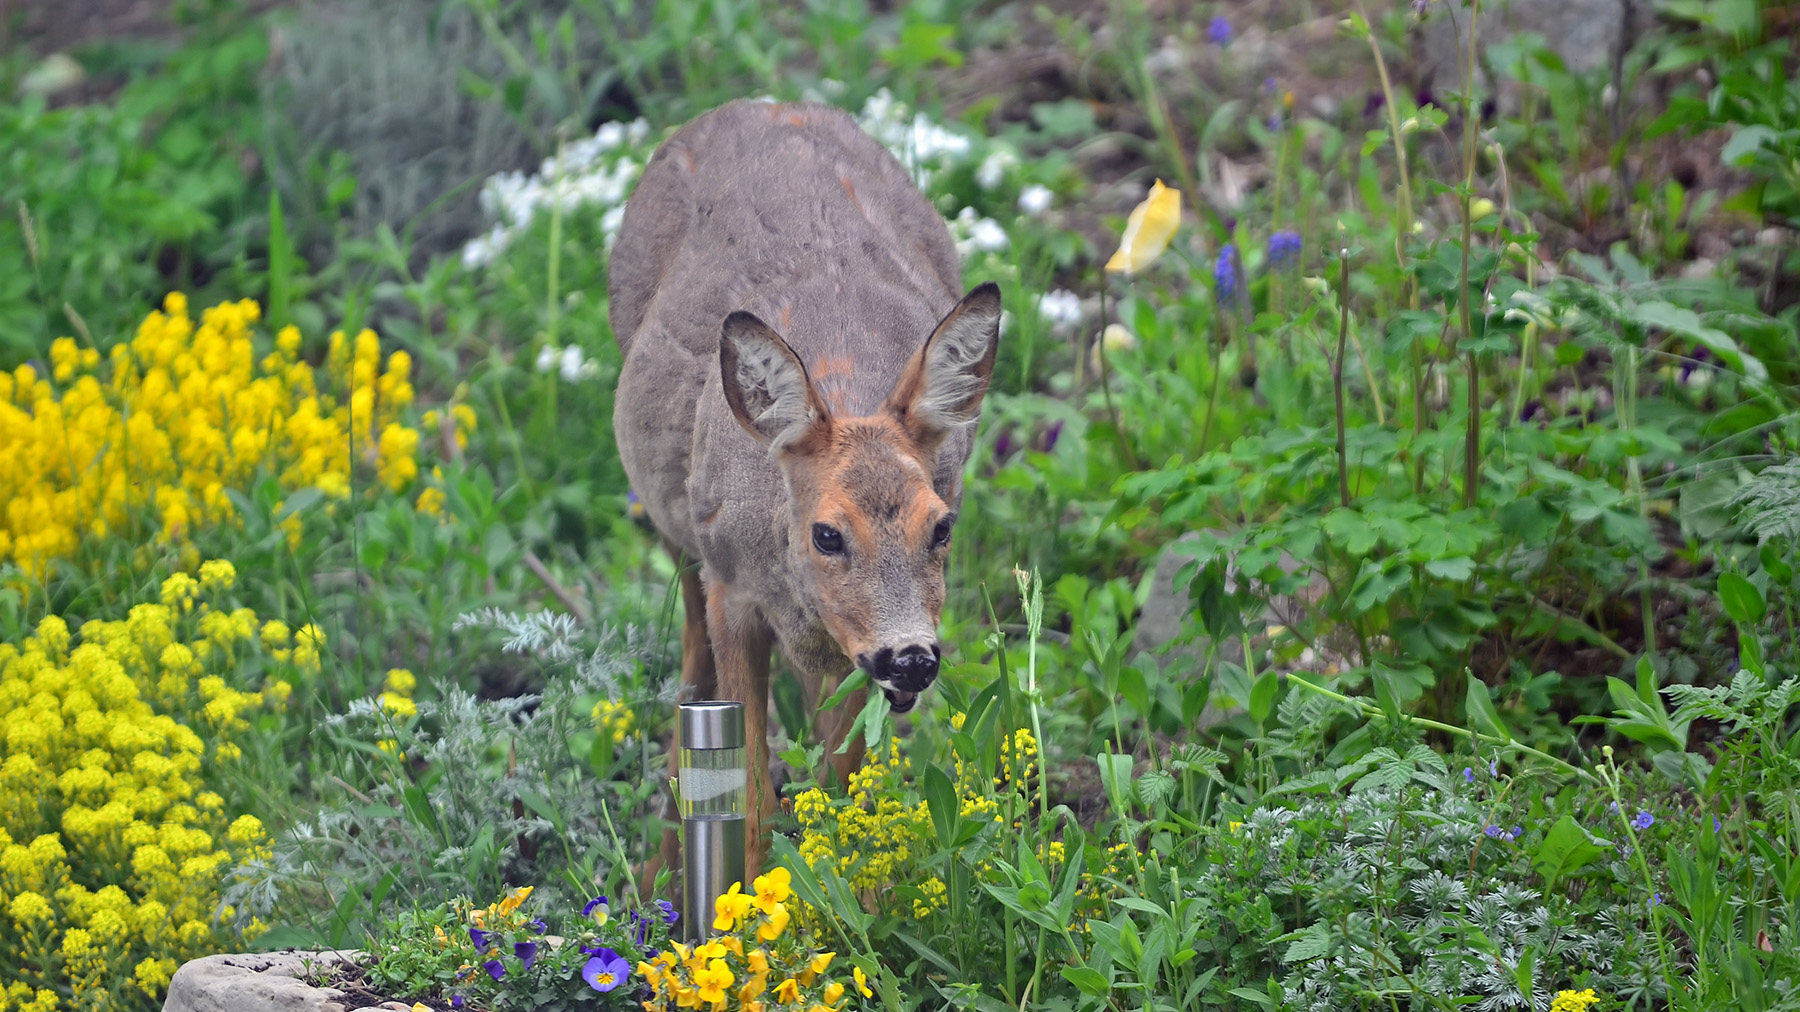 Deer chewing plants in garden